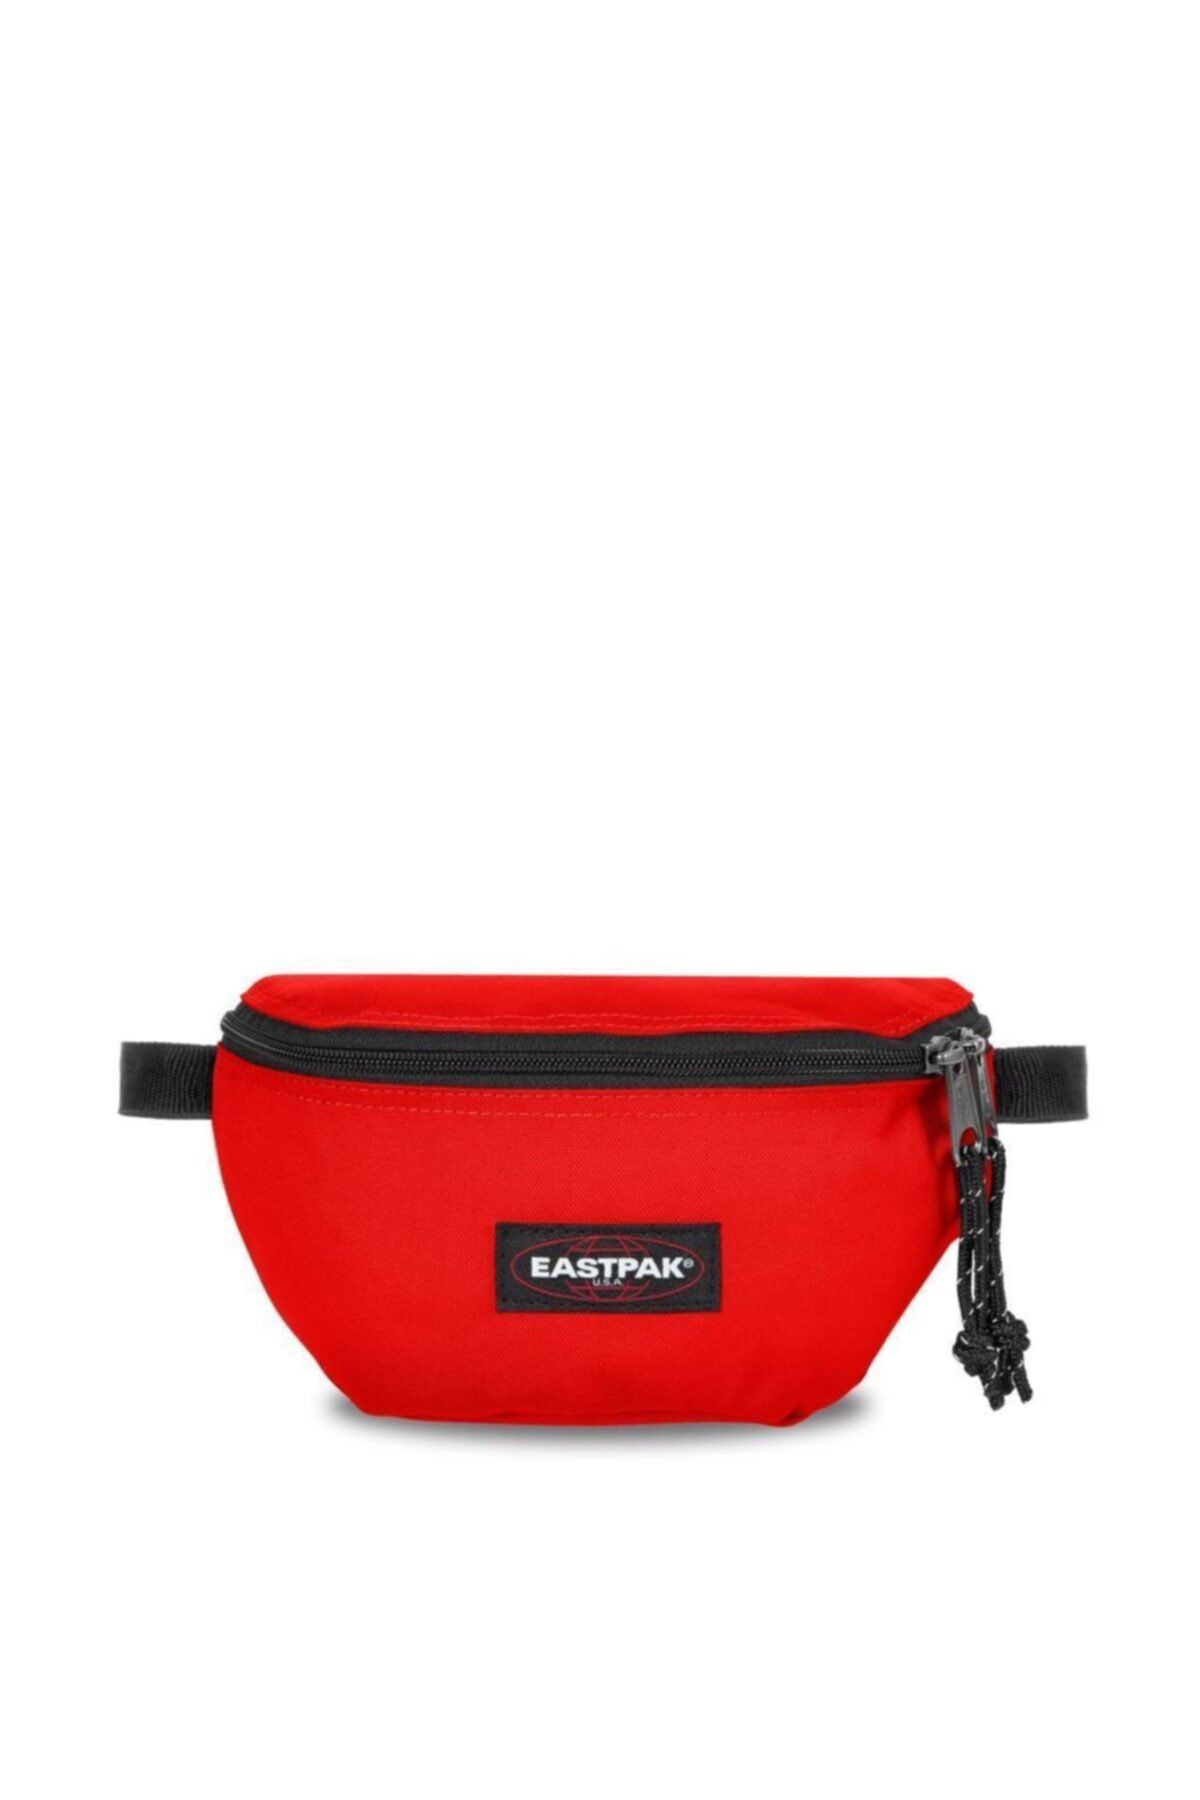 Eastpak Springer Ravishing Red Kırmızı Bel Çantası Ek074n82